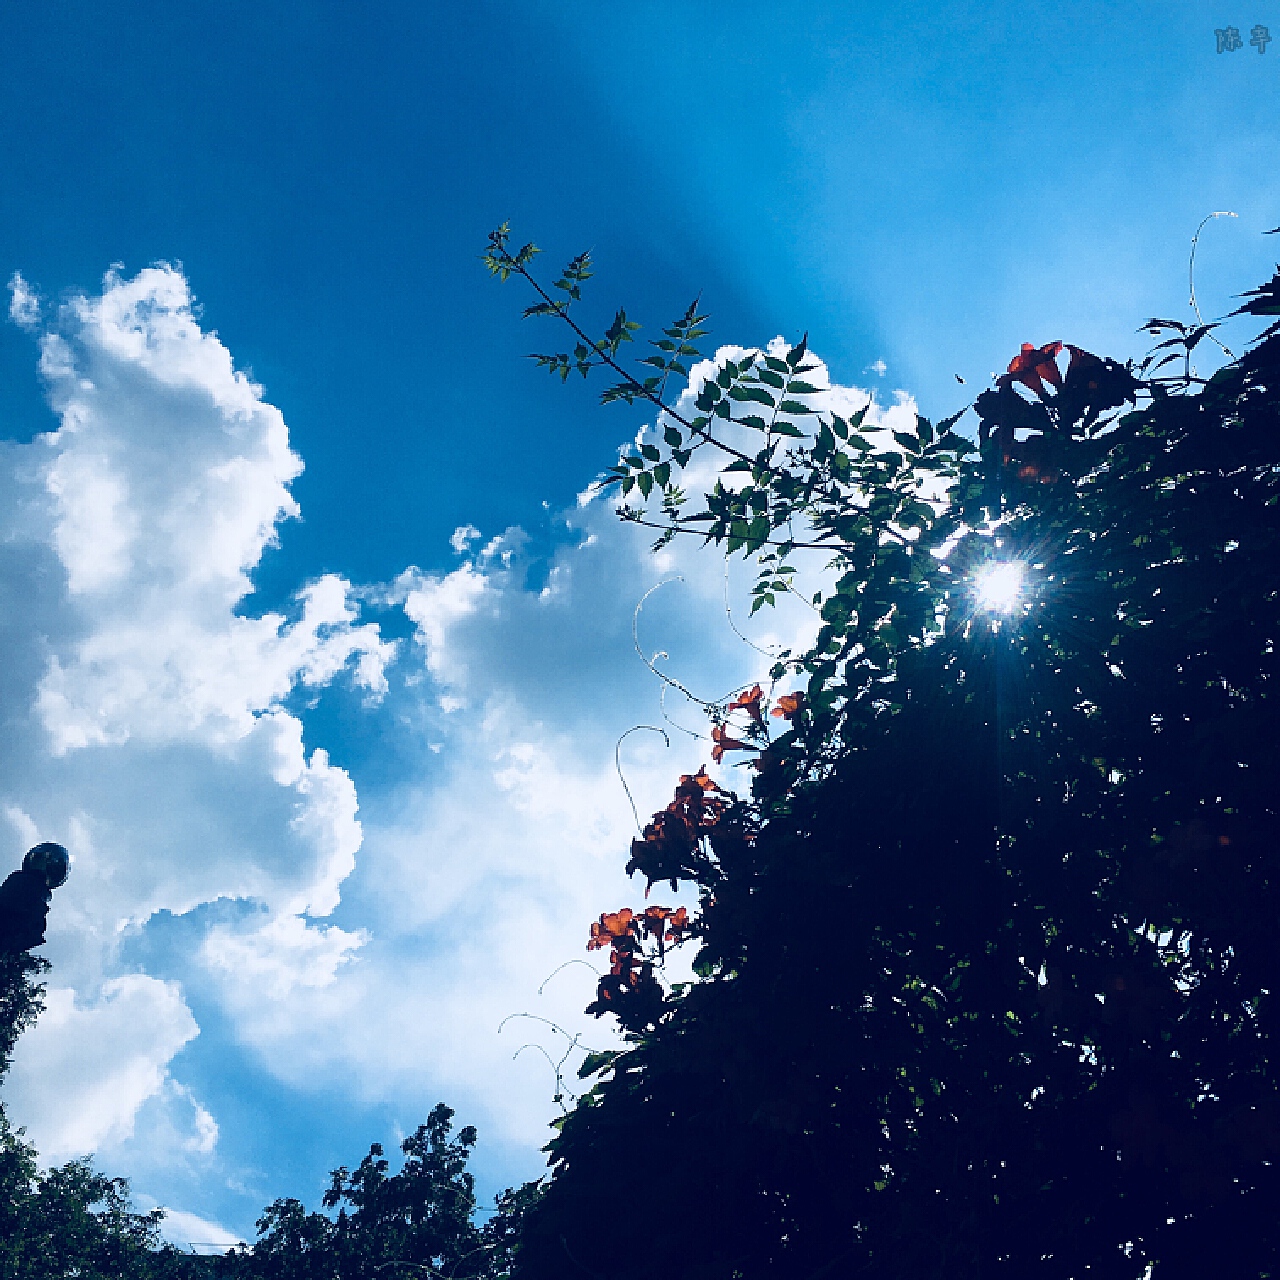 夏日美丽的向日葵田 库存图片. 图片 包括有 蓝色, 户外, 问题的, 花瓣, 增长, 背包徒步旅行者 - 157112485